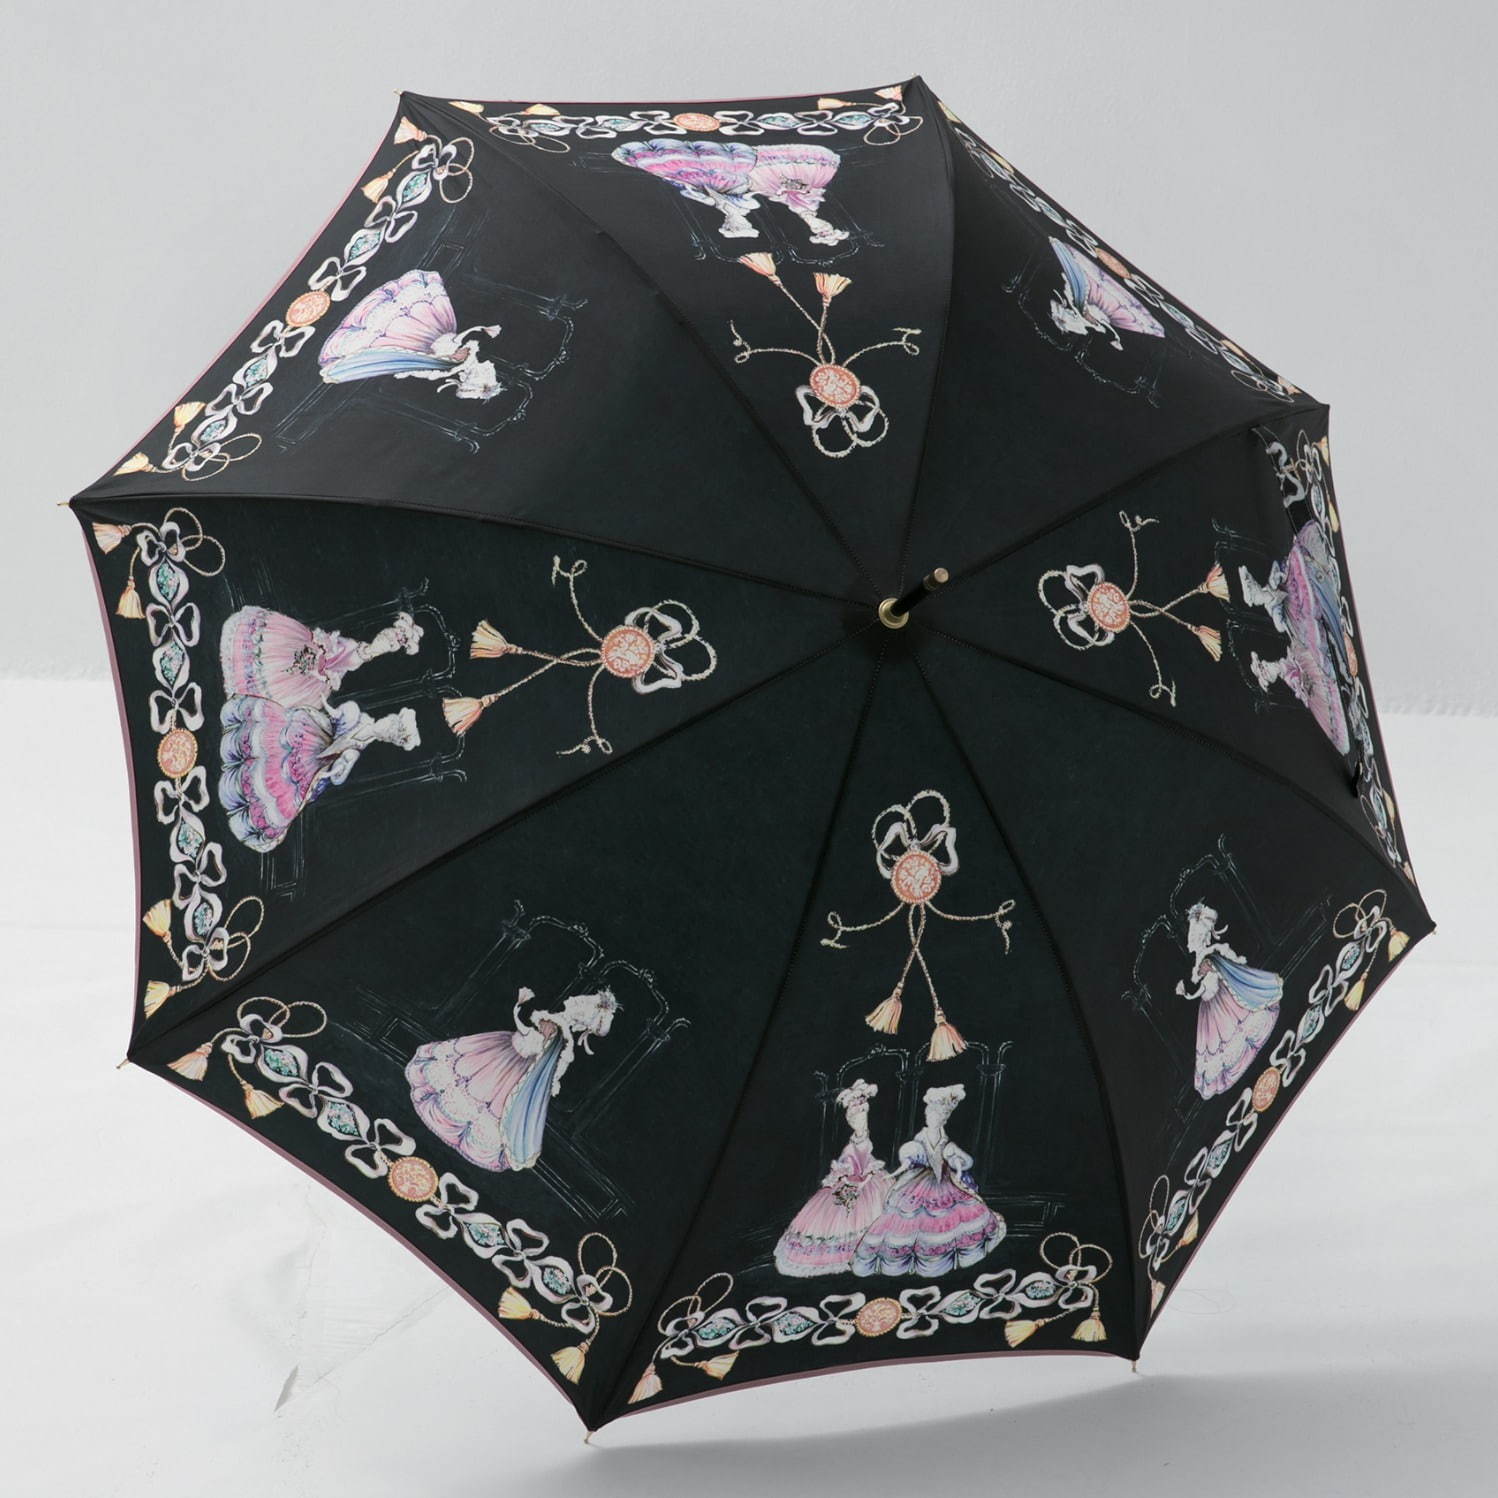 1920年にフランス・パリで創業したギドゥジャンの雨傘は、“マリーアントワネット”をモチーフにした華やかなデザイン。ブランド100周年を記念した復刻モデルとなっており、松屋銀座で先行発売される。